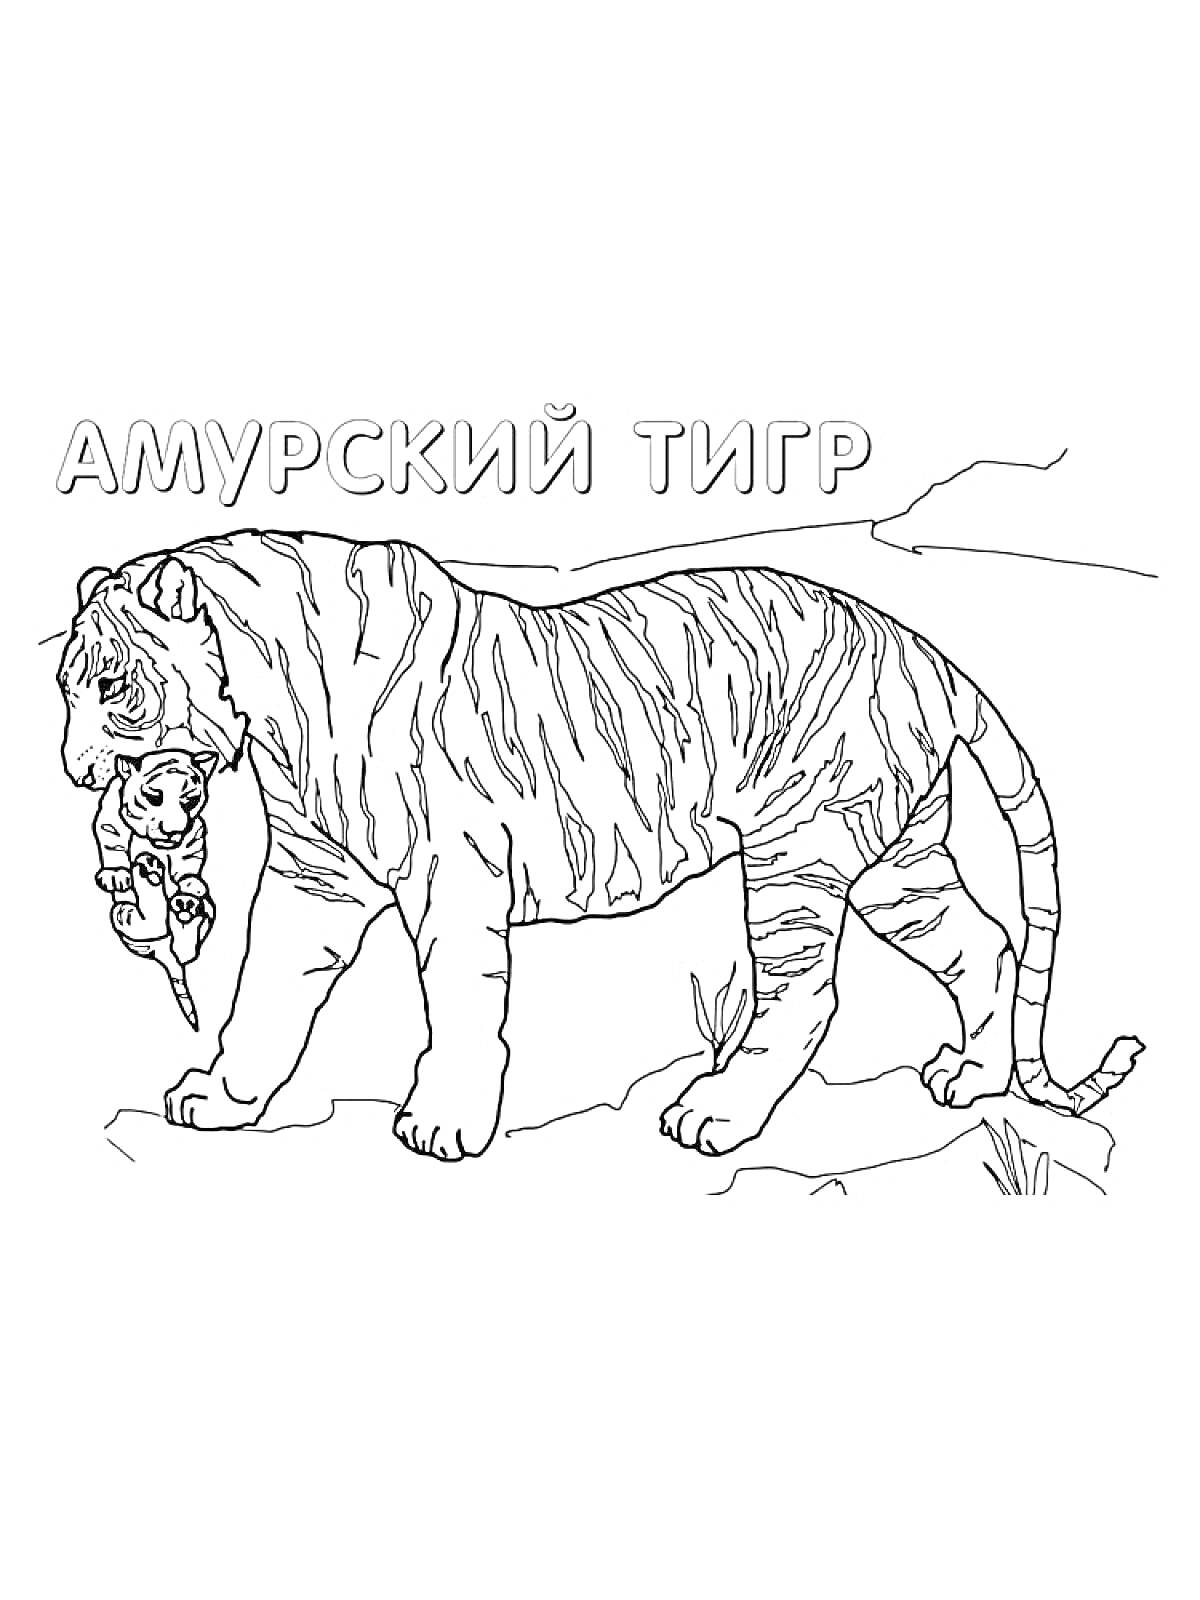 Раскраска Амурский тигр, тигр с детёнышем в зубах, растительность, каменистая поверхность